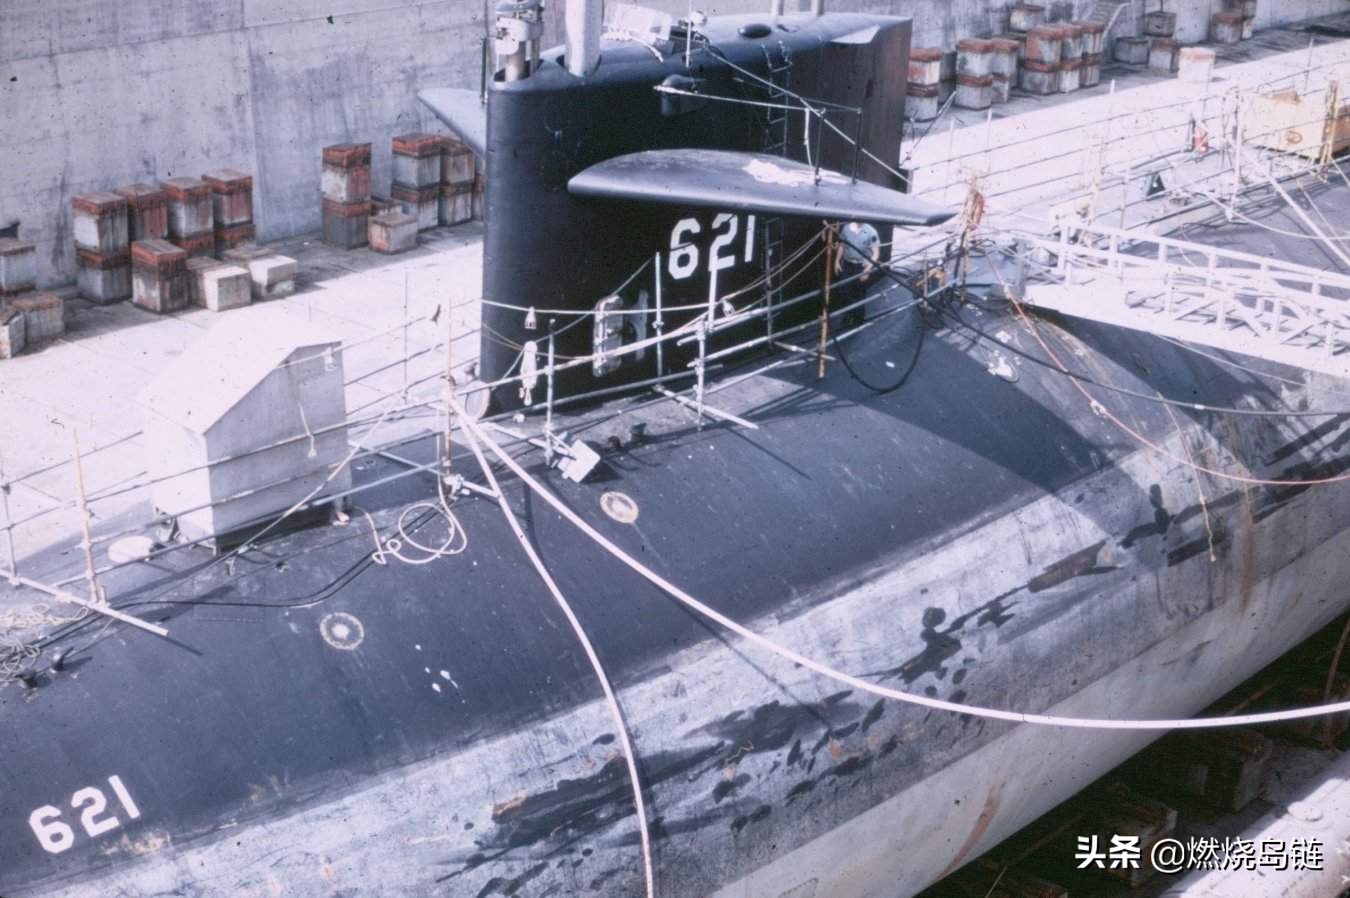 世界海军史上第一次核潜艇事故的主角美国"长尾鲨"级攻击核潜艇